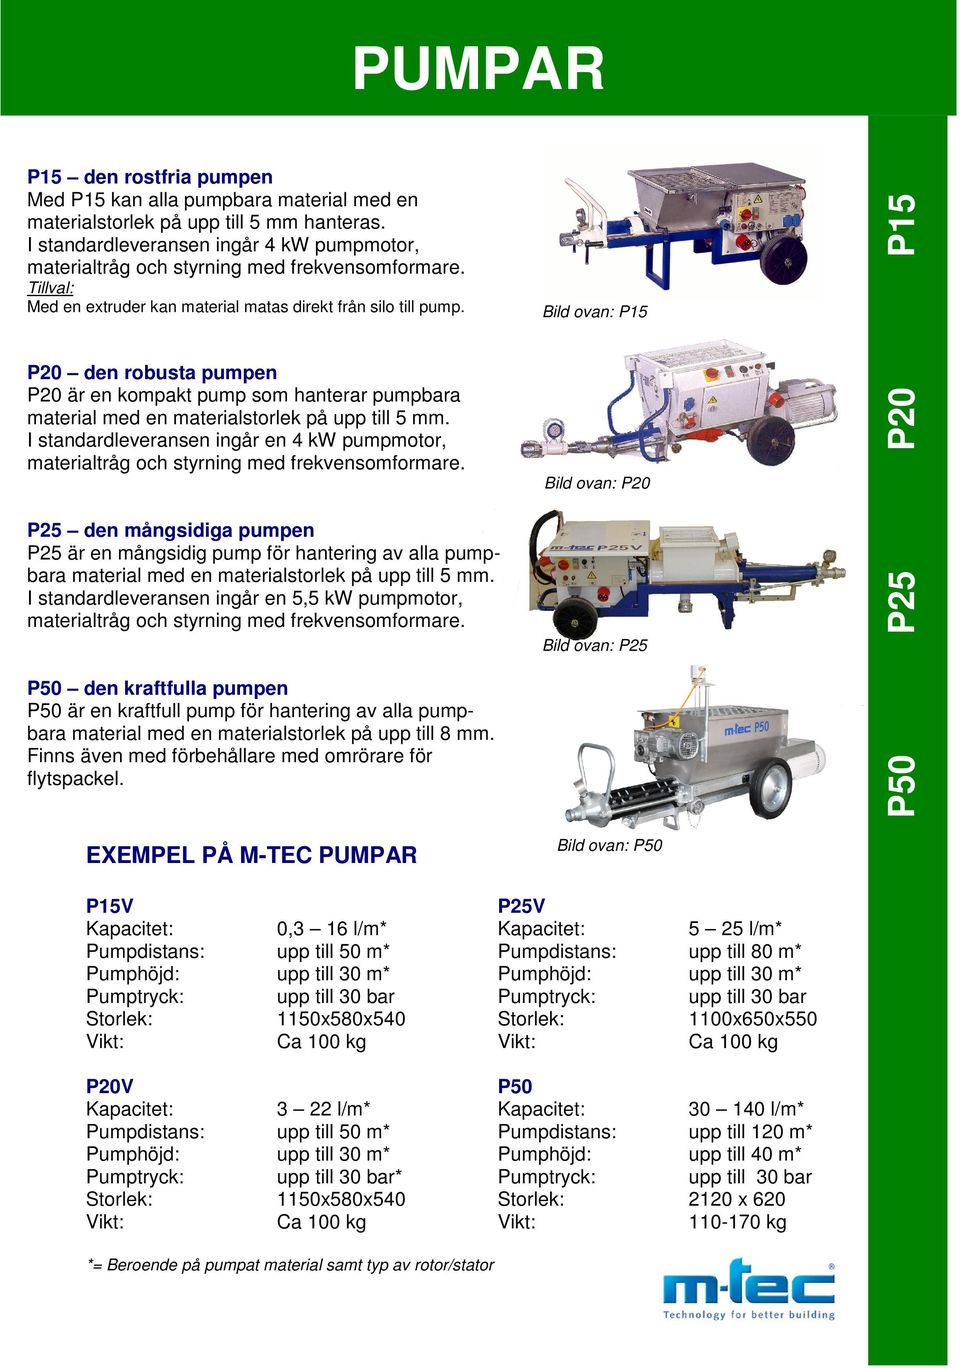 P20 den robusta pumpen P20 är en kompakt pump som hanterar pumpbara material med en materialstorlek på upp till 5 mm.